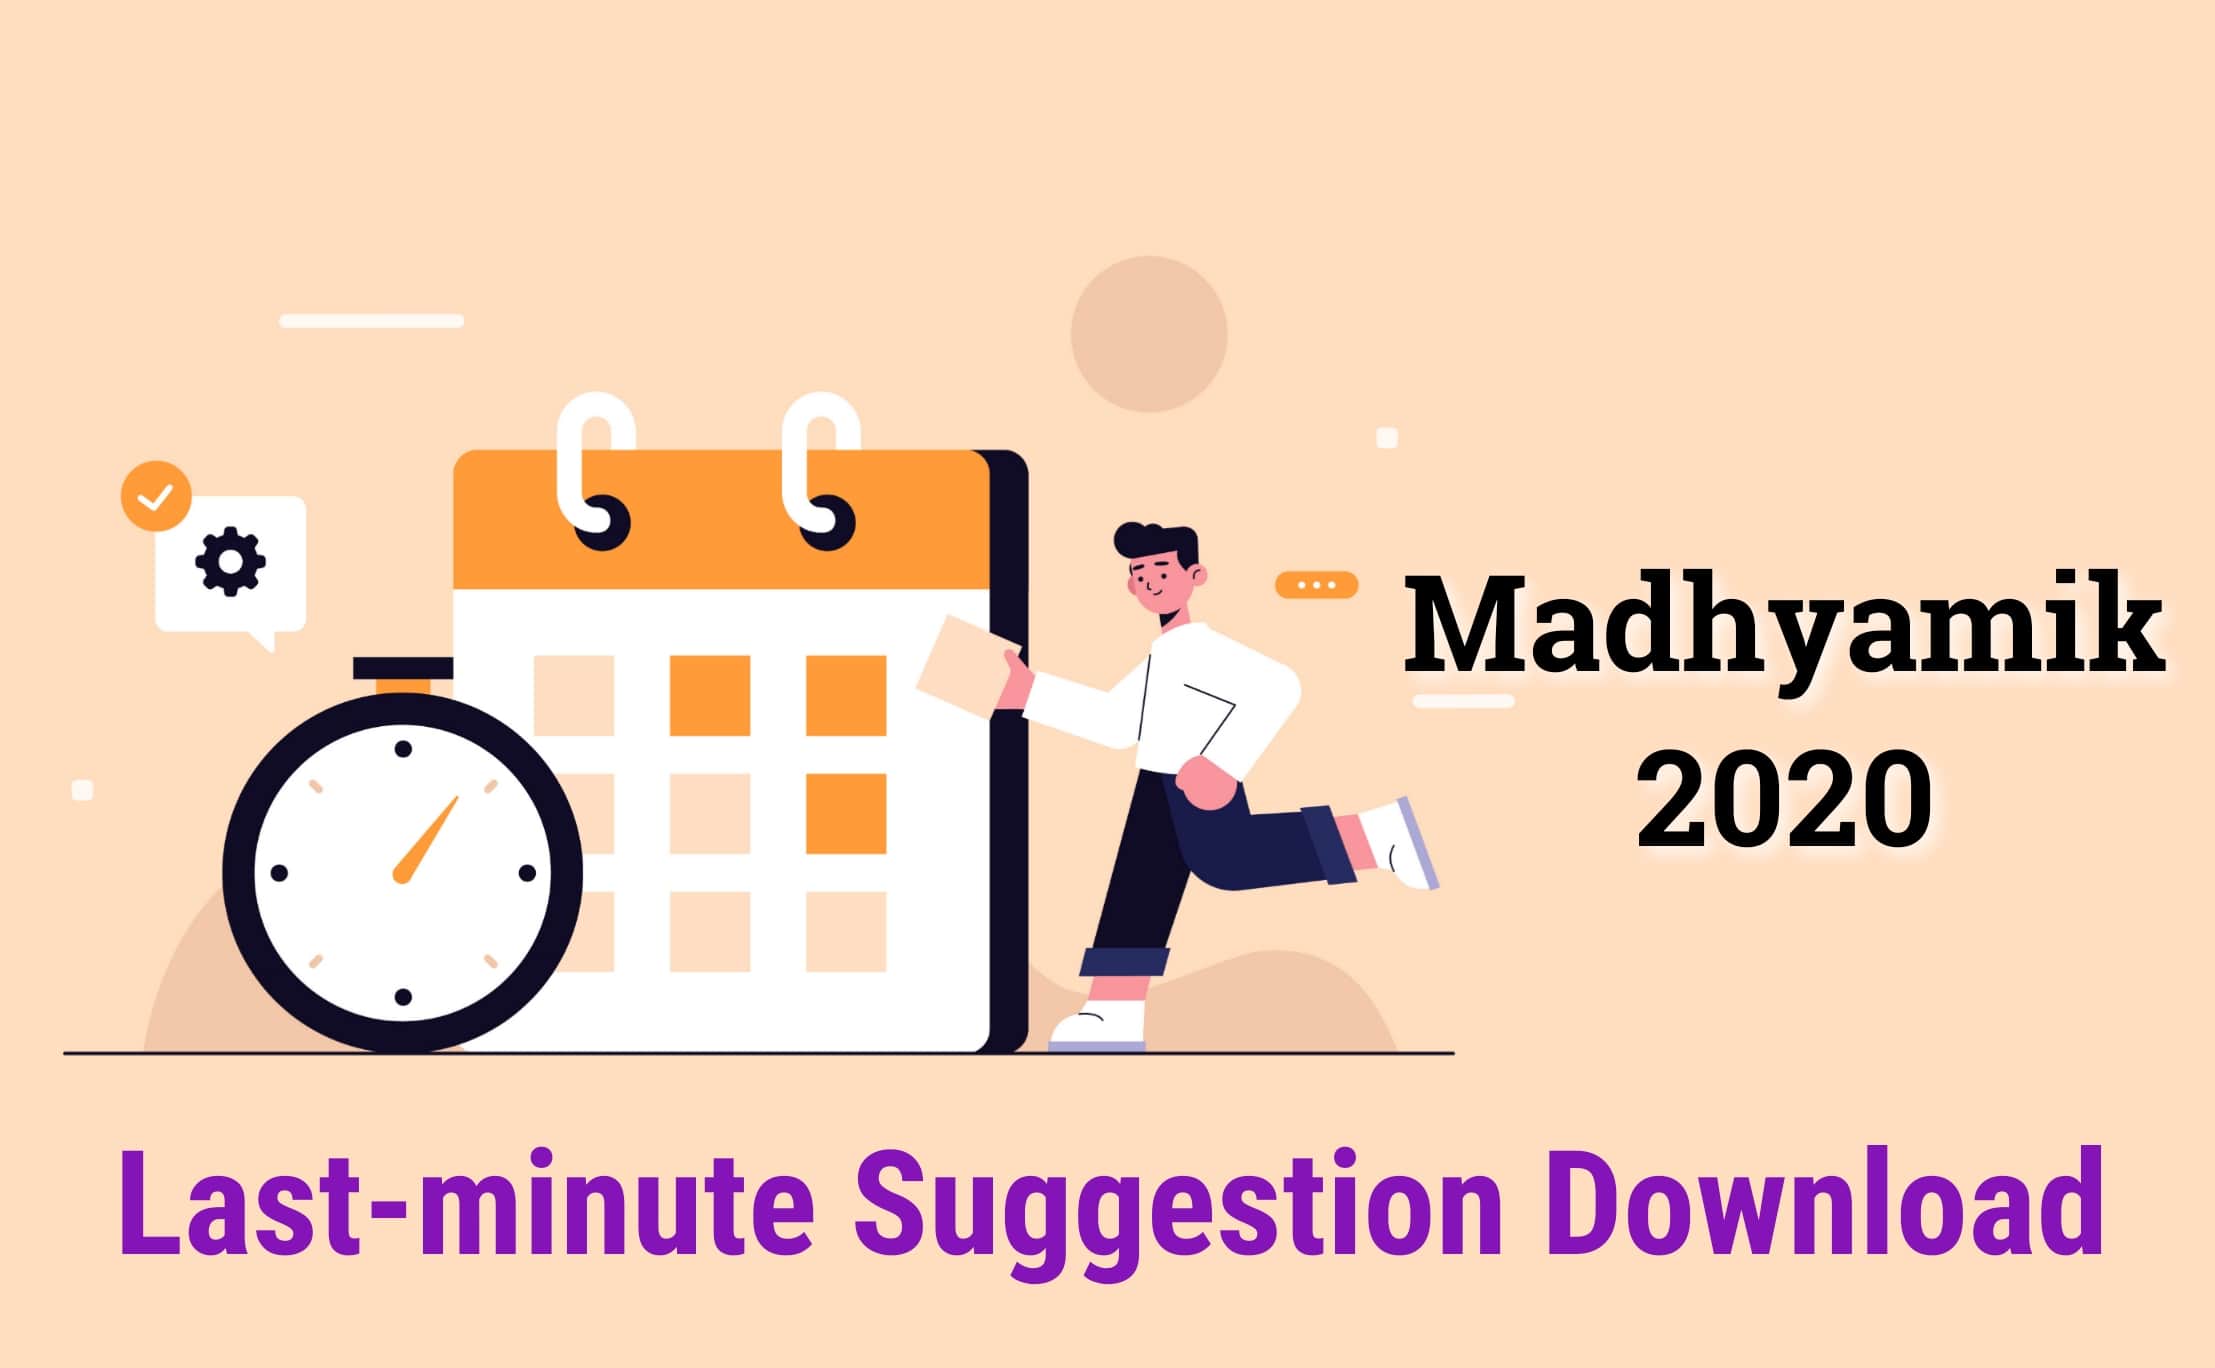 Madhyamik 2020 last minute suggestion